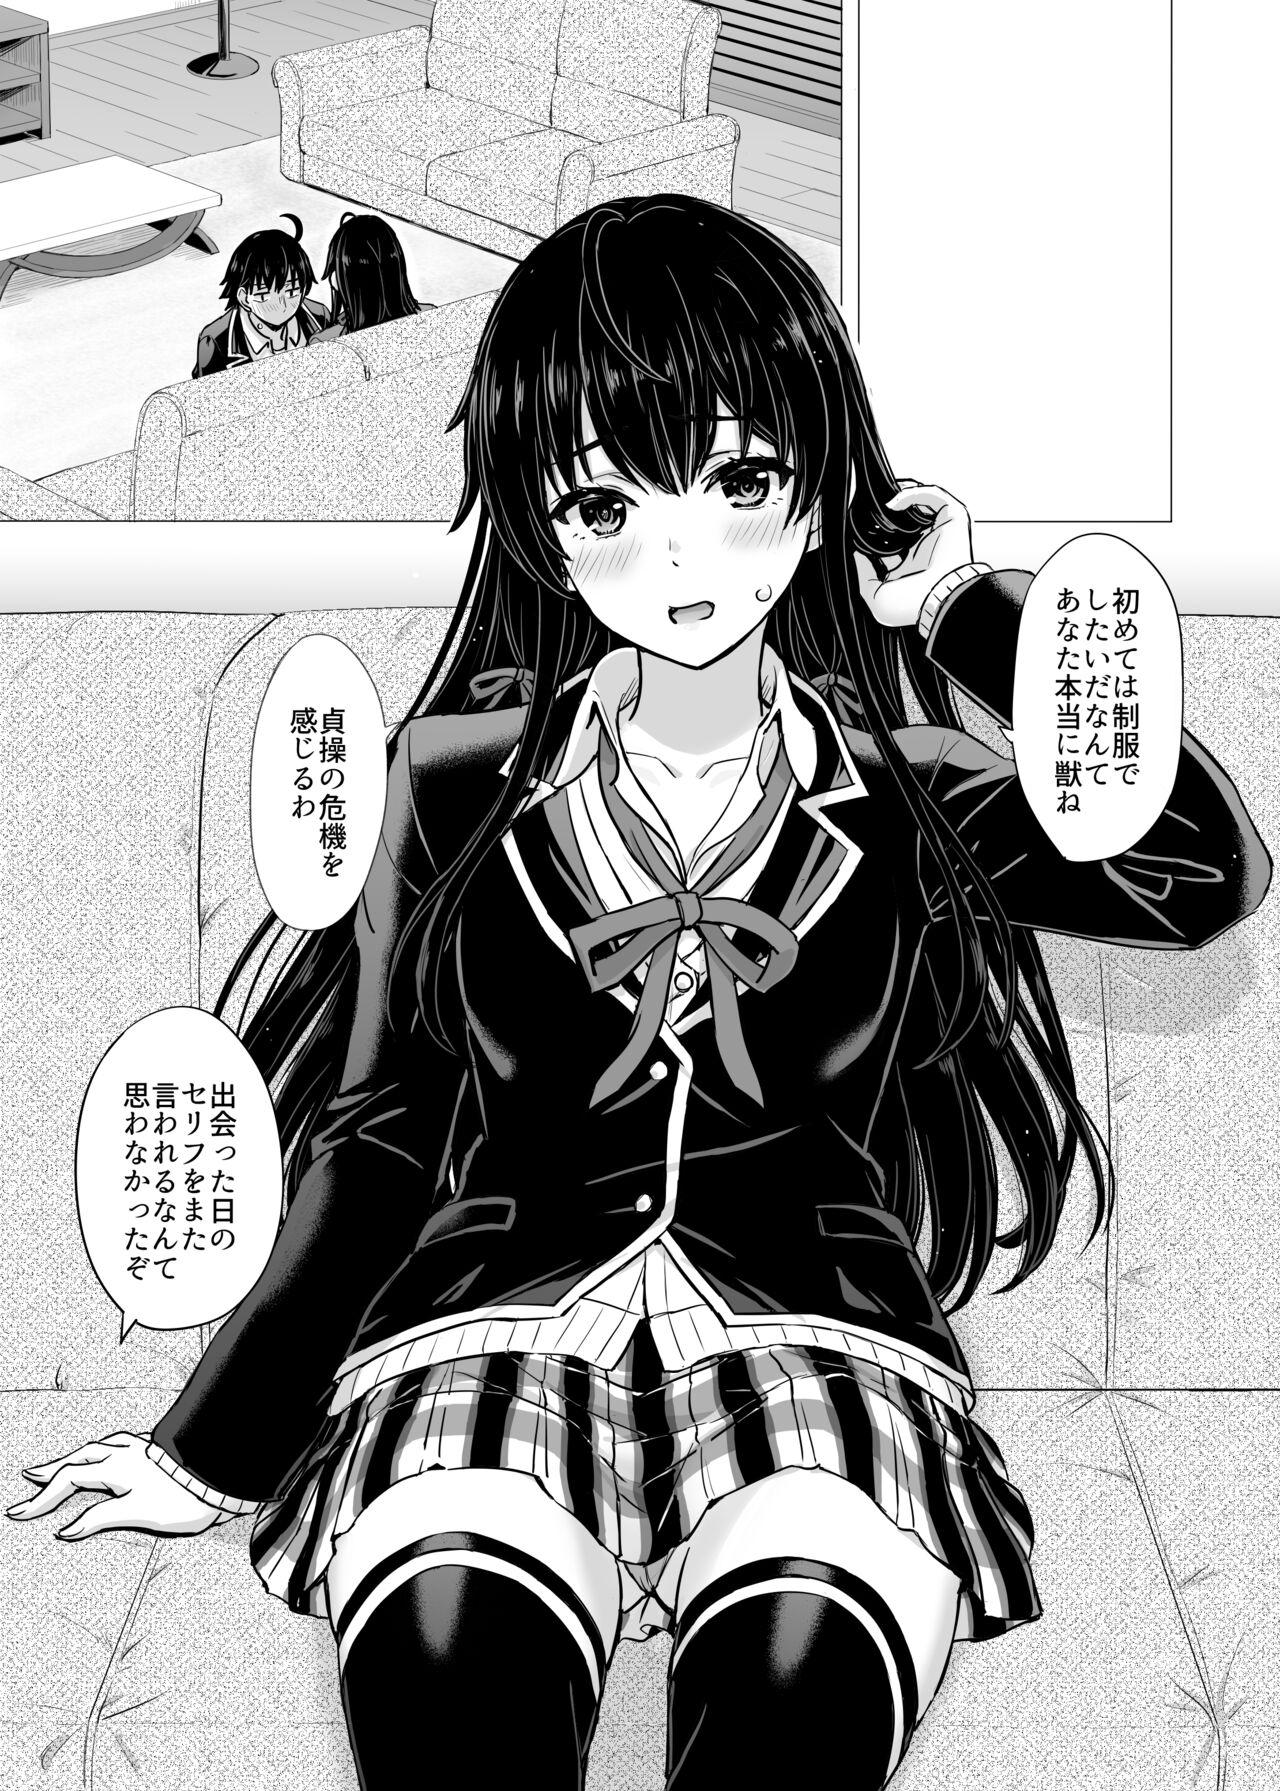 Toilet Yukinon Manga - Yahari ore no seishun love come wa machigatteiru Orgame - Picture 1